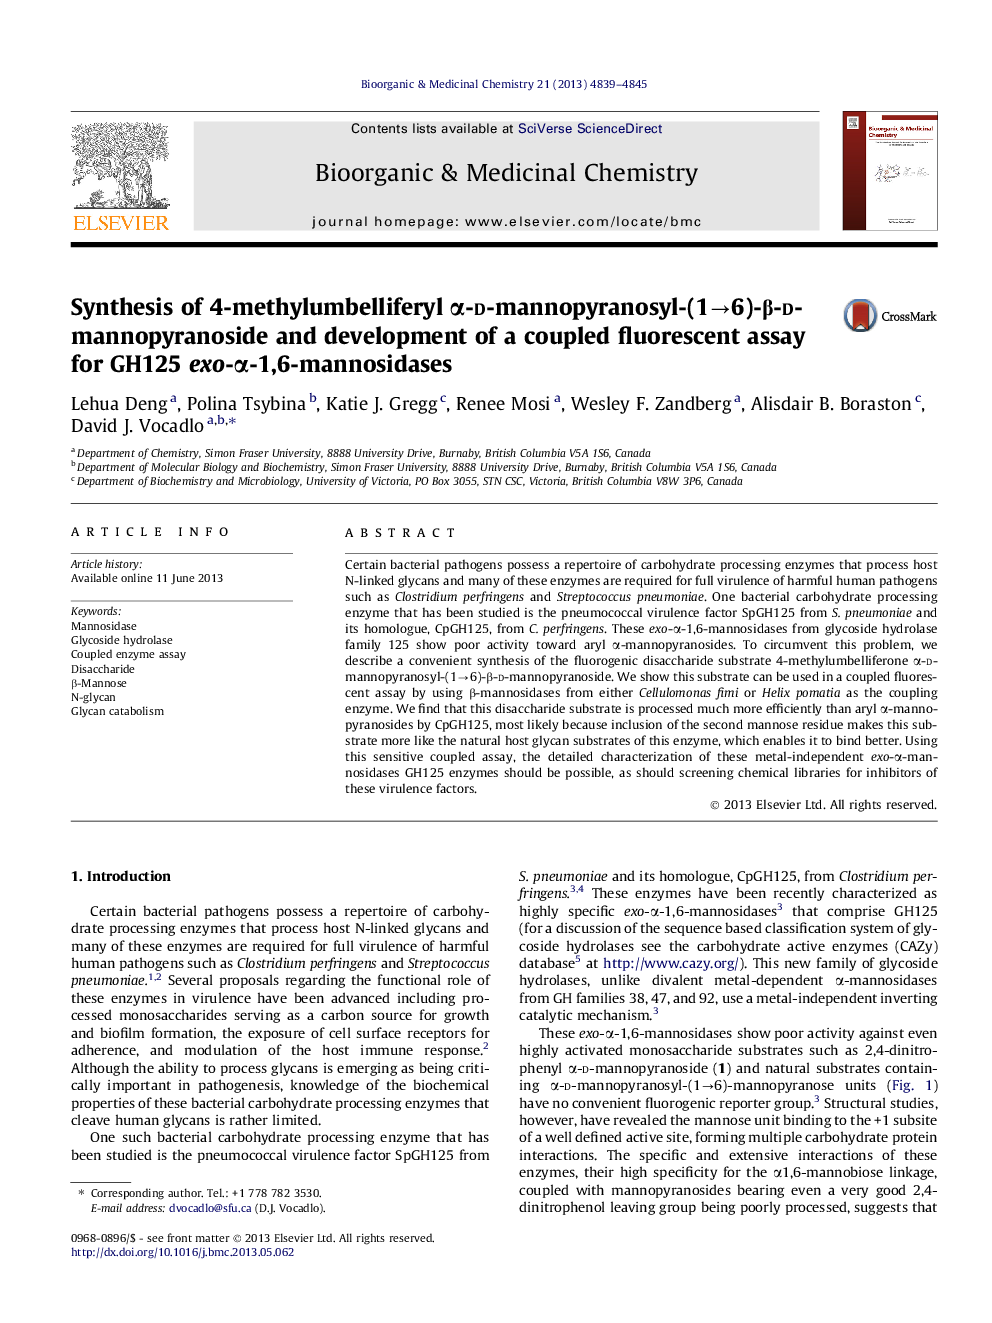 Synthesis of 4-methylumbelliferyl Î±-d-mannopyranosyl-(1â6)-Î²-d-mannopyranoside and development of a coupled fluorescent assay for GH125 exo-Î±-1,6-mannosidases